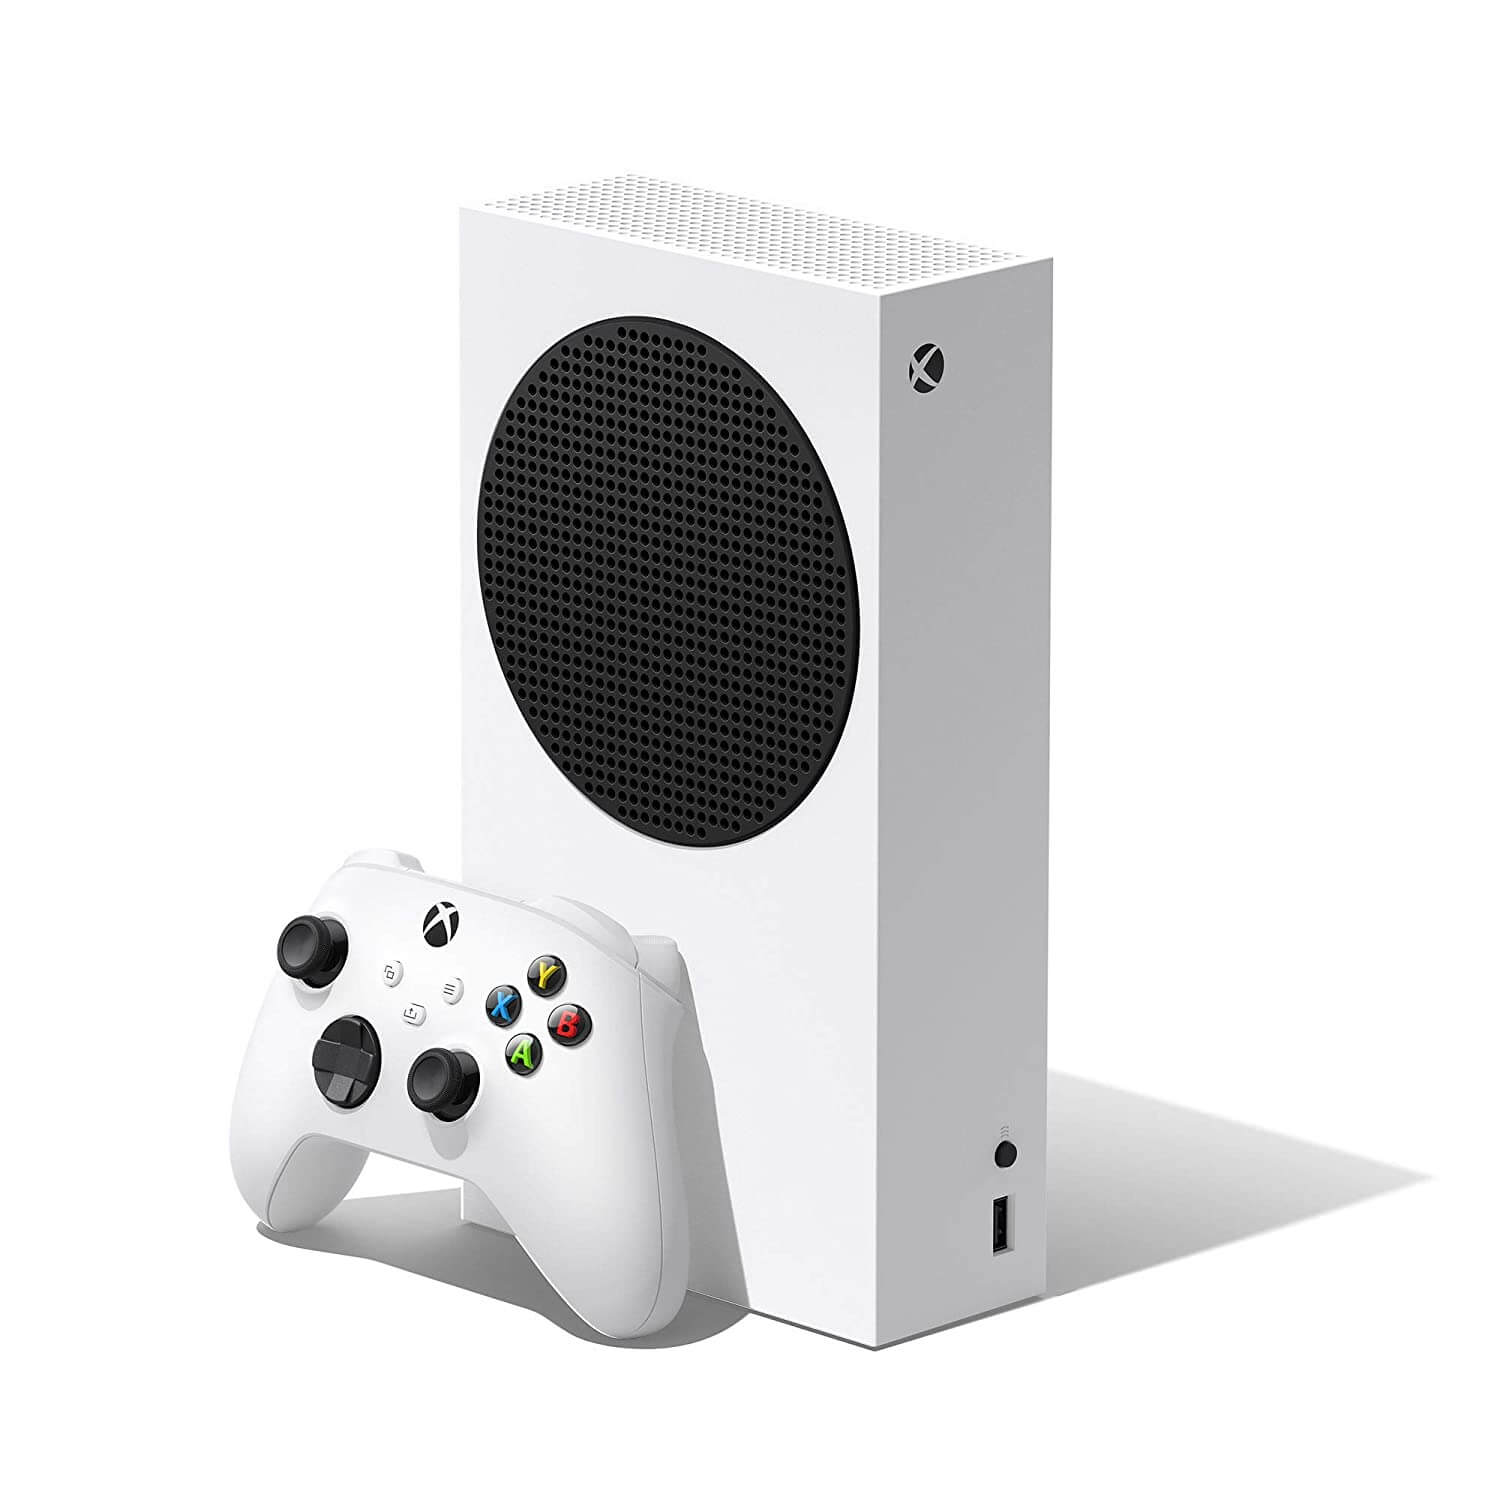 Игровая консоль Microsoft Xbox Series S, белый игровая консоль microsoft xbox series s 512 гб 3 месяца подписки gamepass rrs 00153